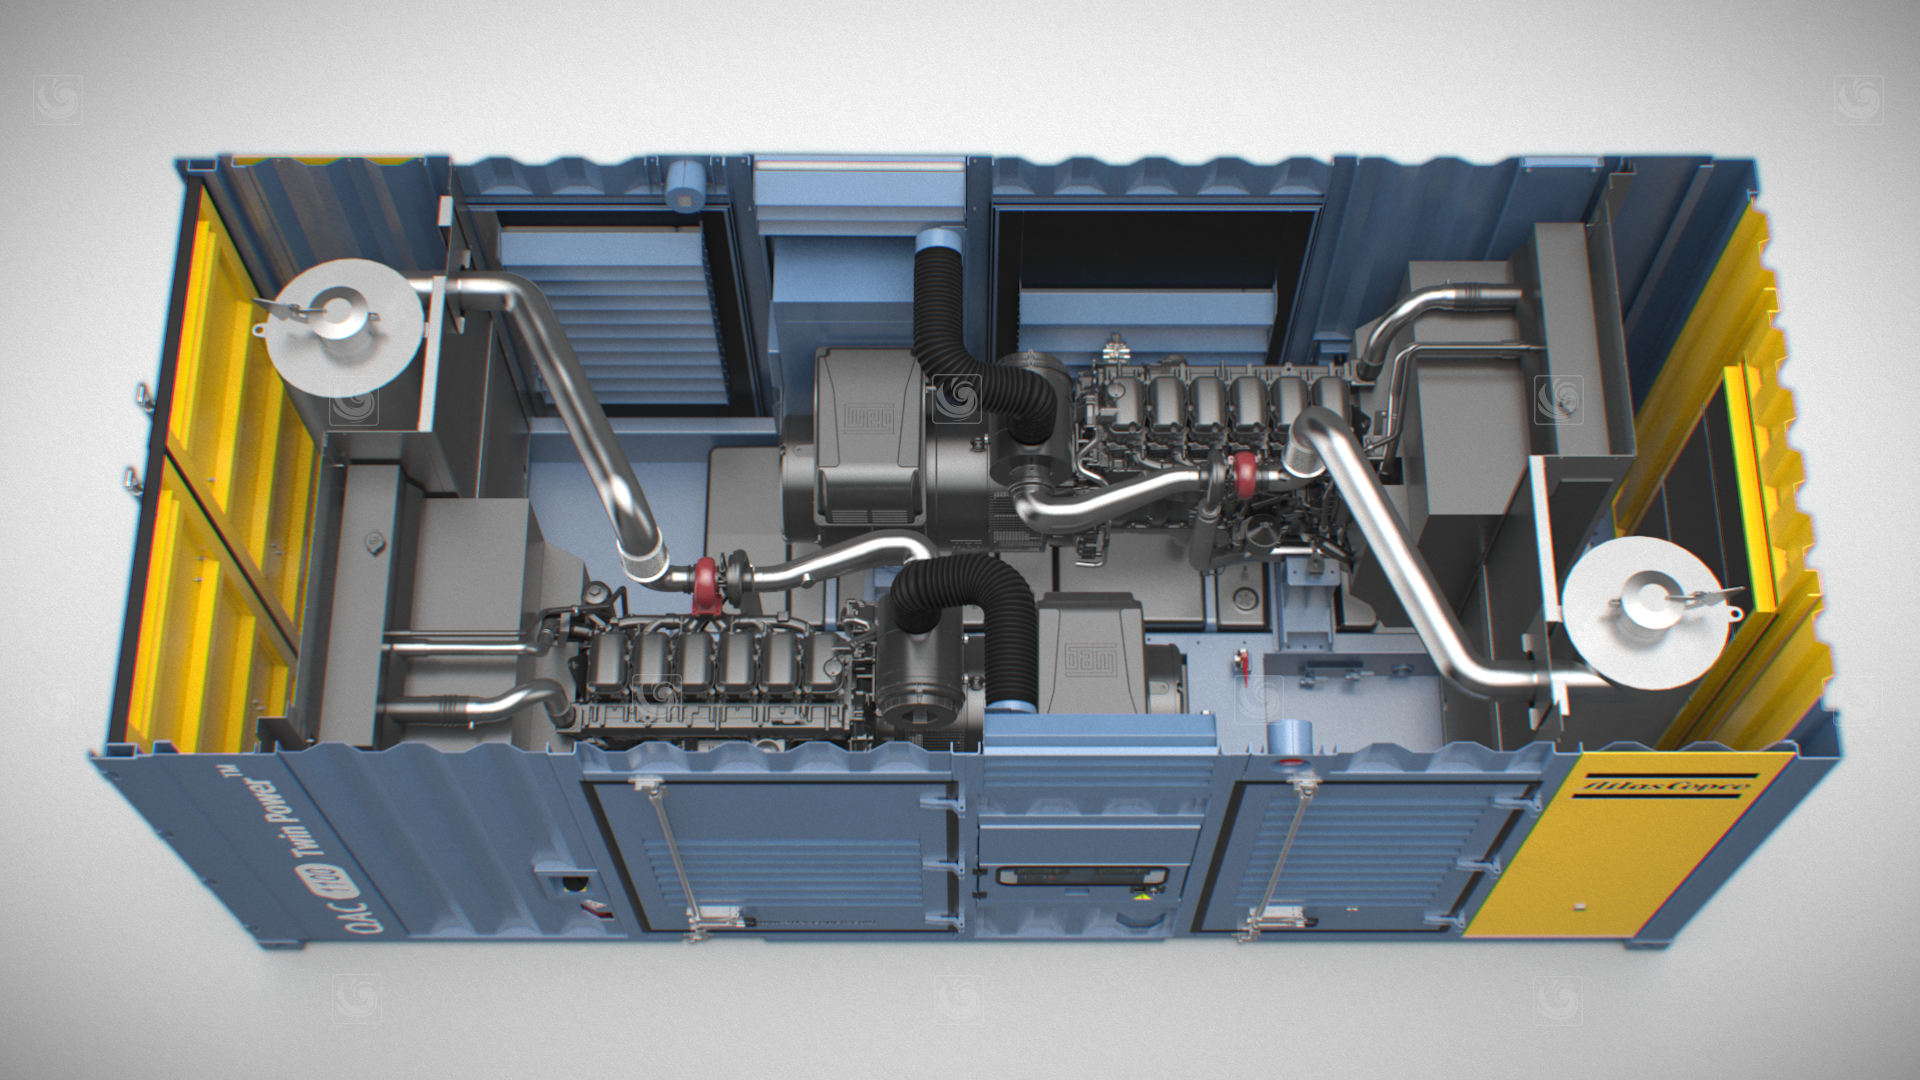 Fotograma de animación 3D mostrando la vista cenital de un generador de Atlas Copco